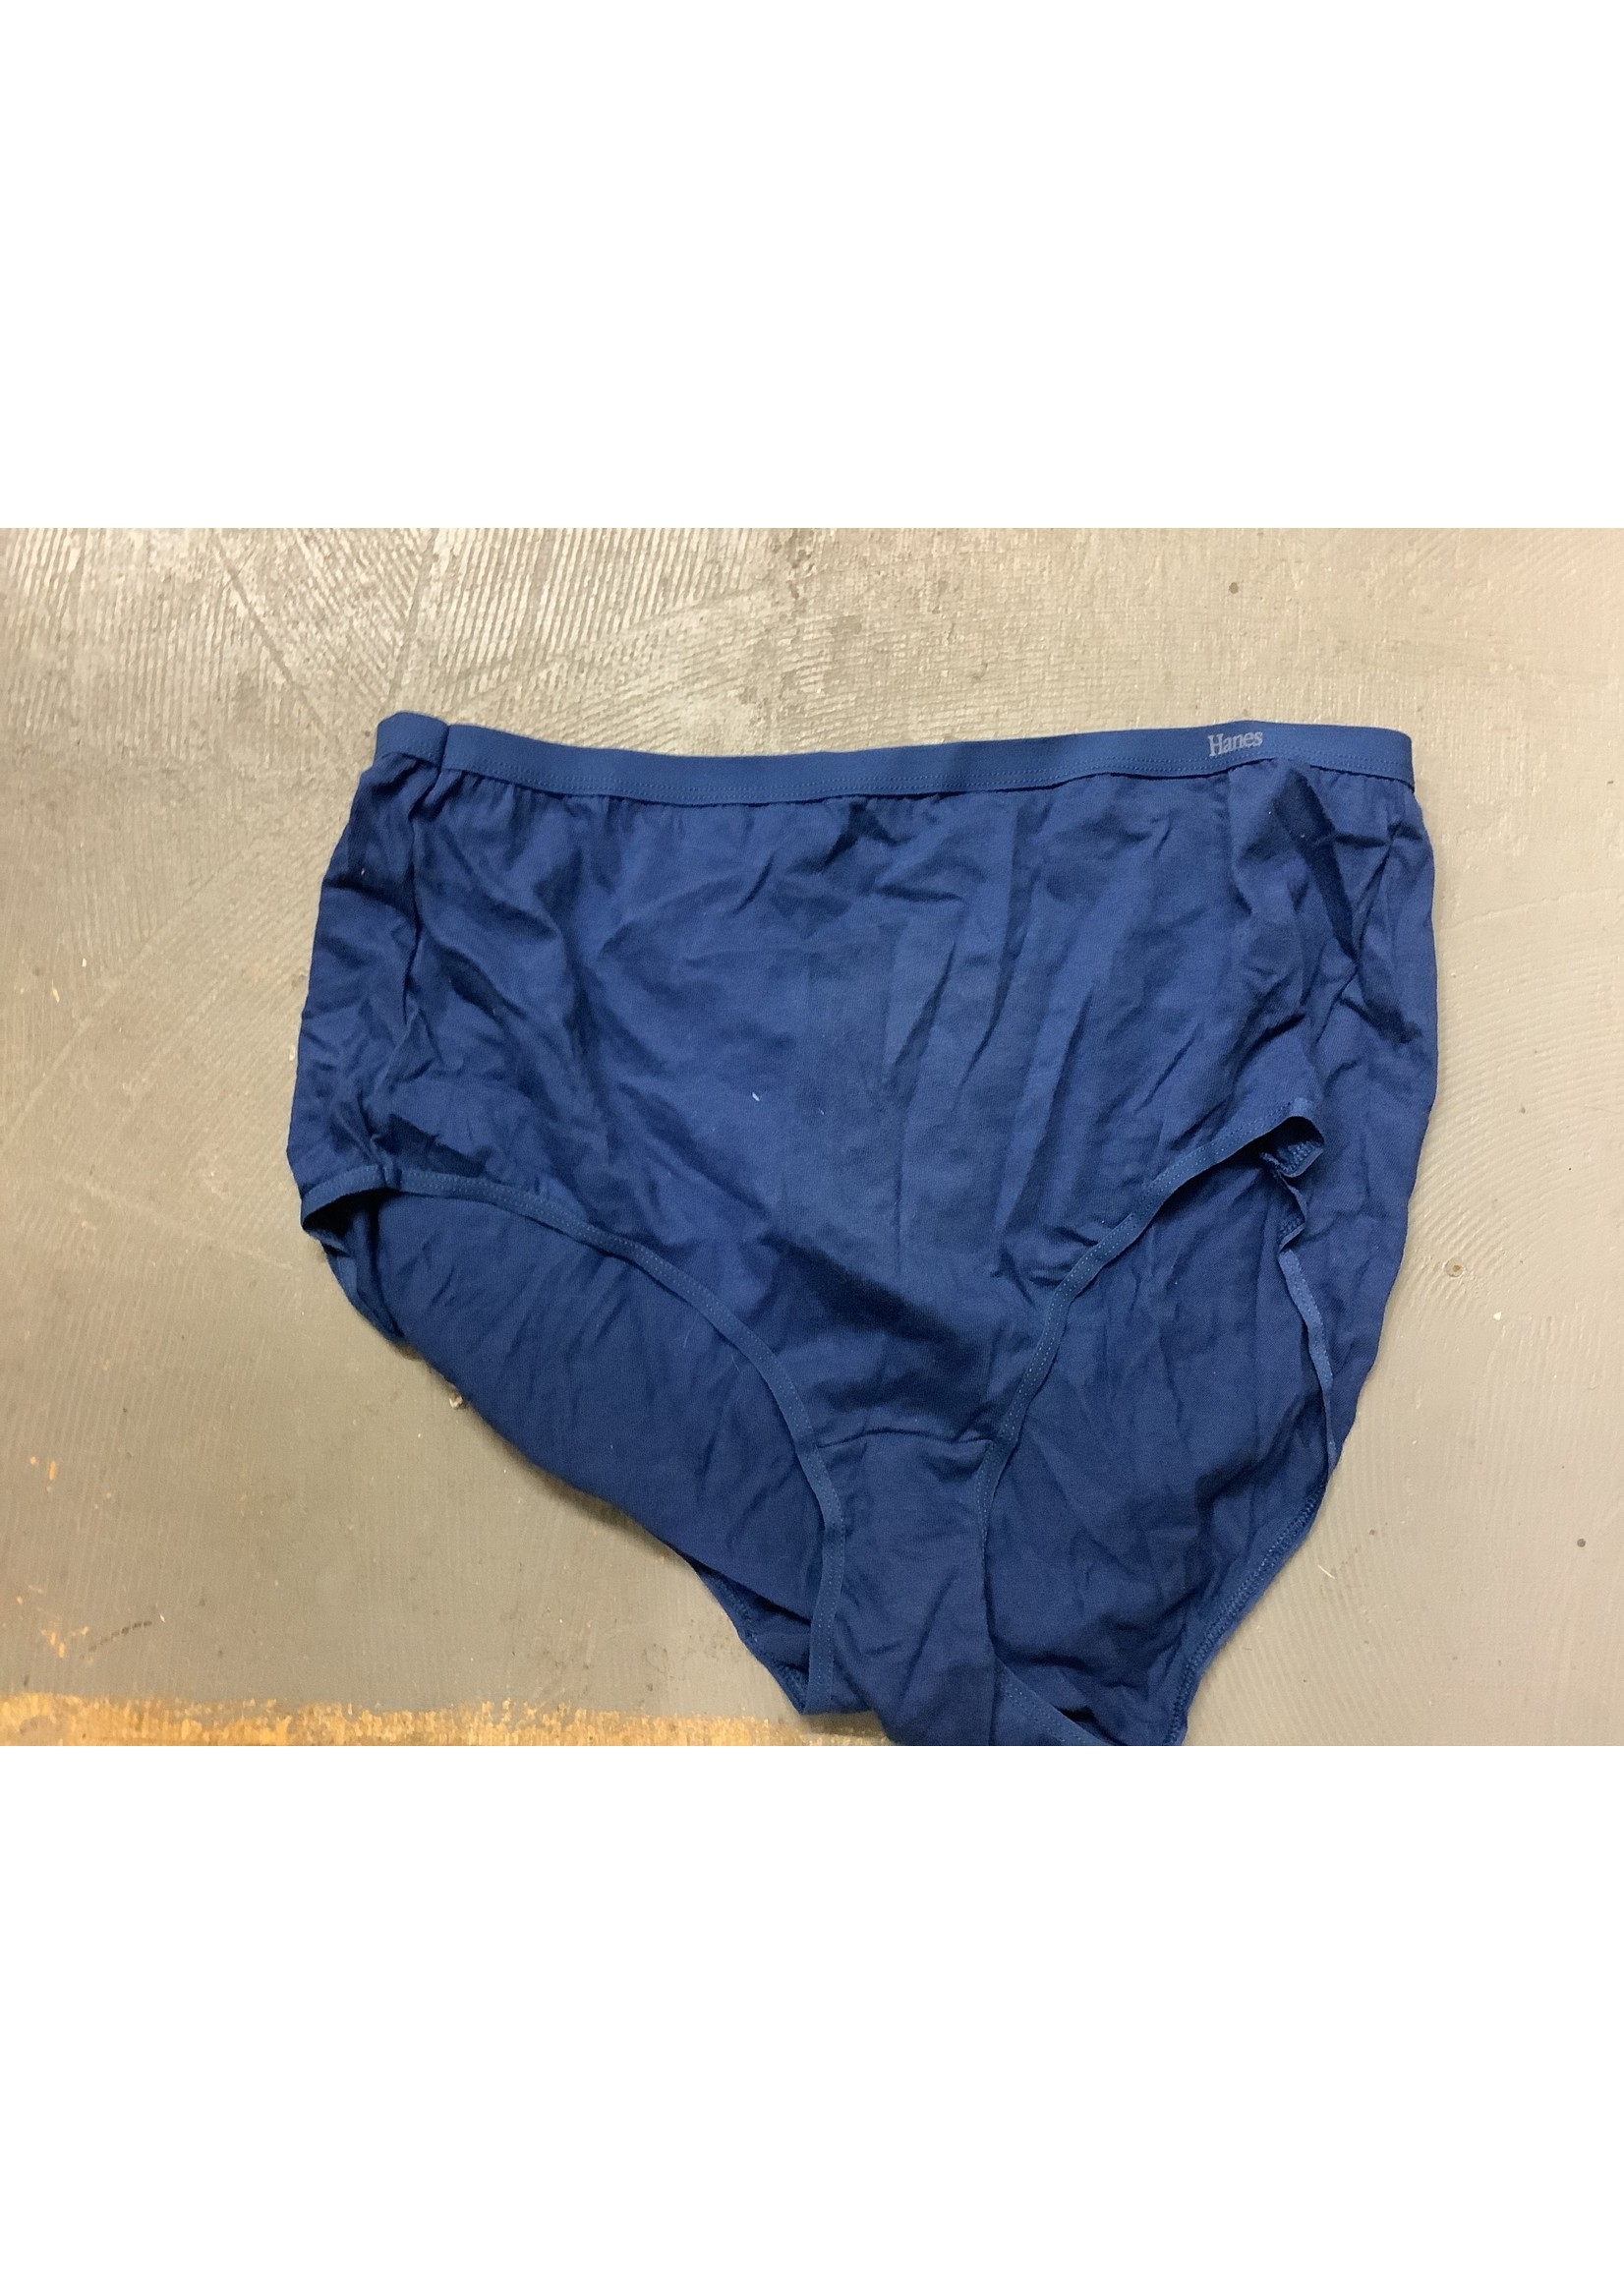 Hanes 100% cotton navy womens underwear size 9